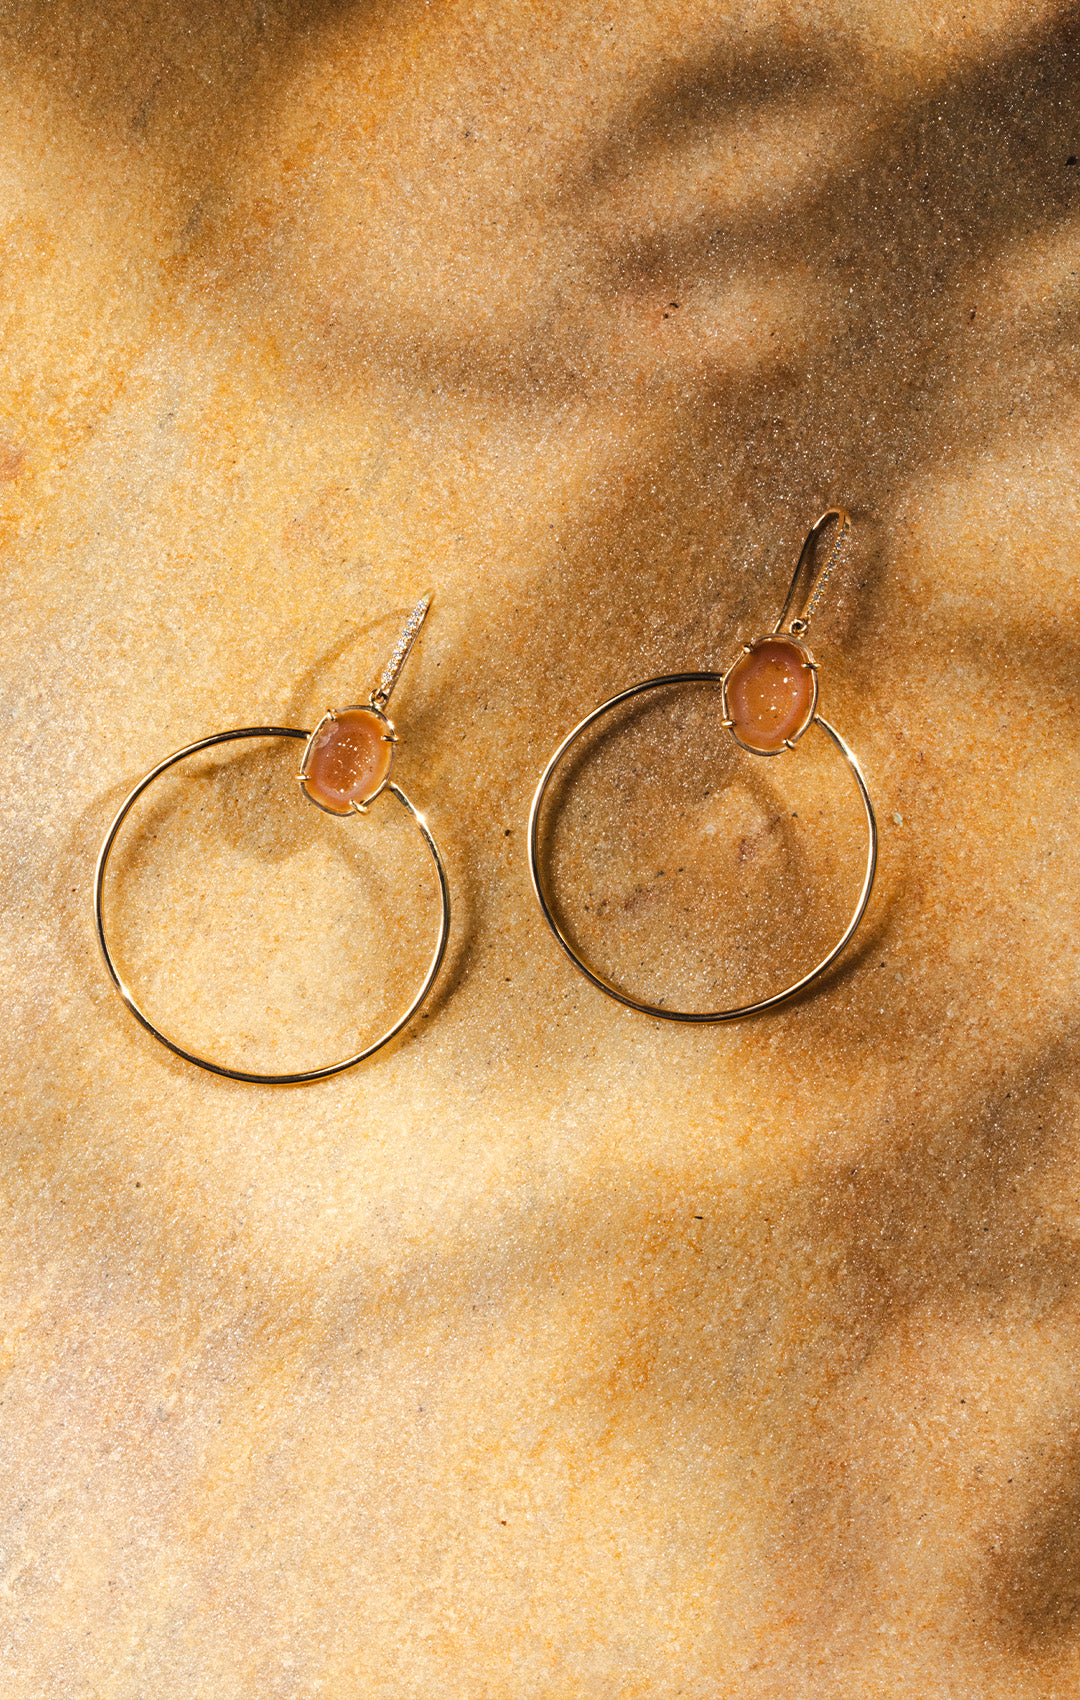 JADE earrings, orange